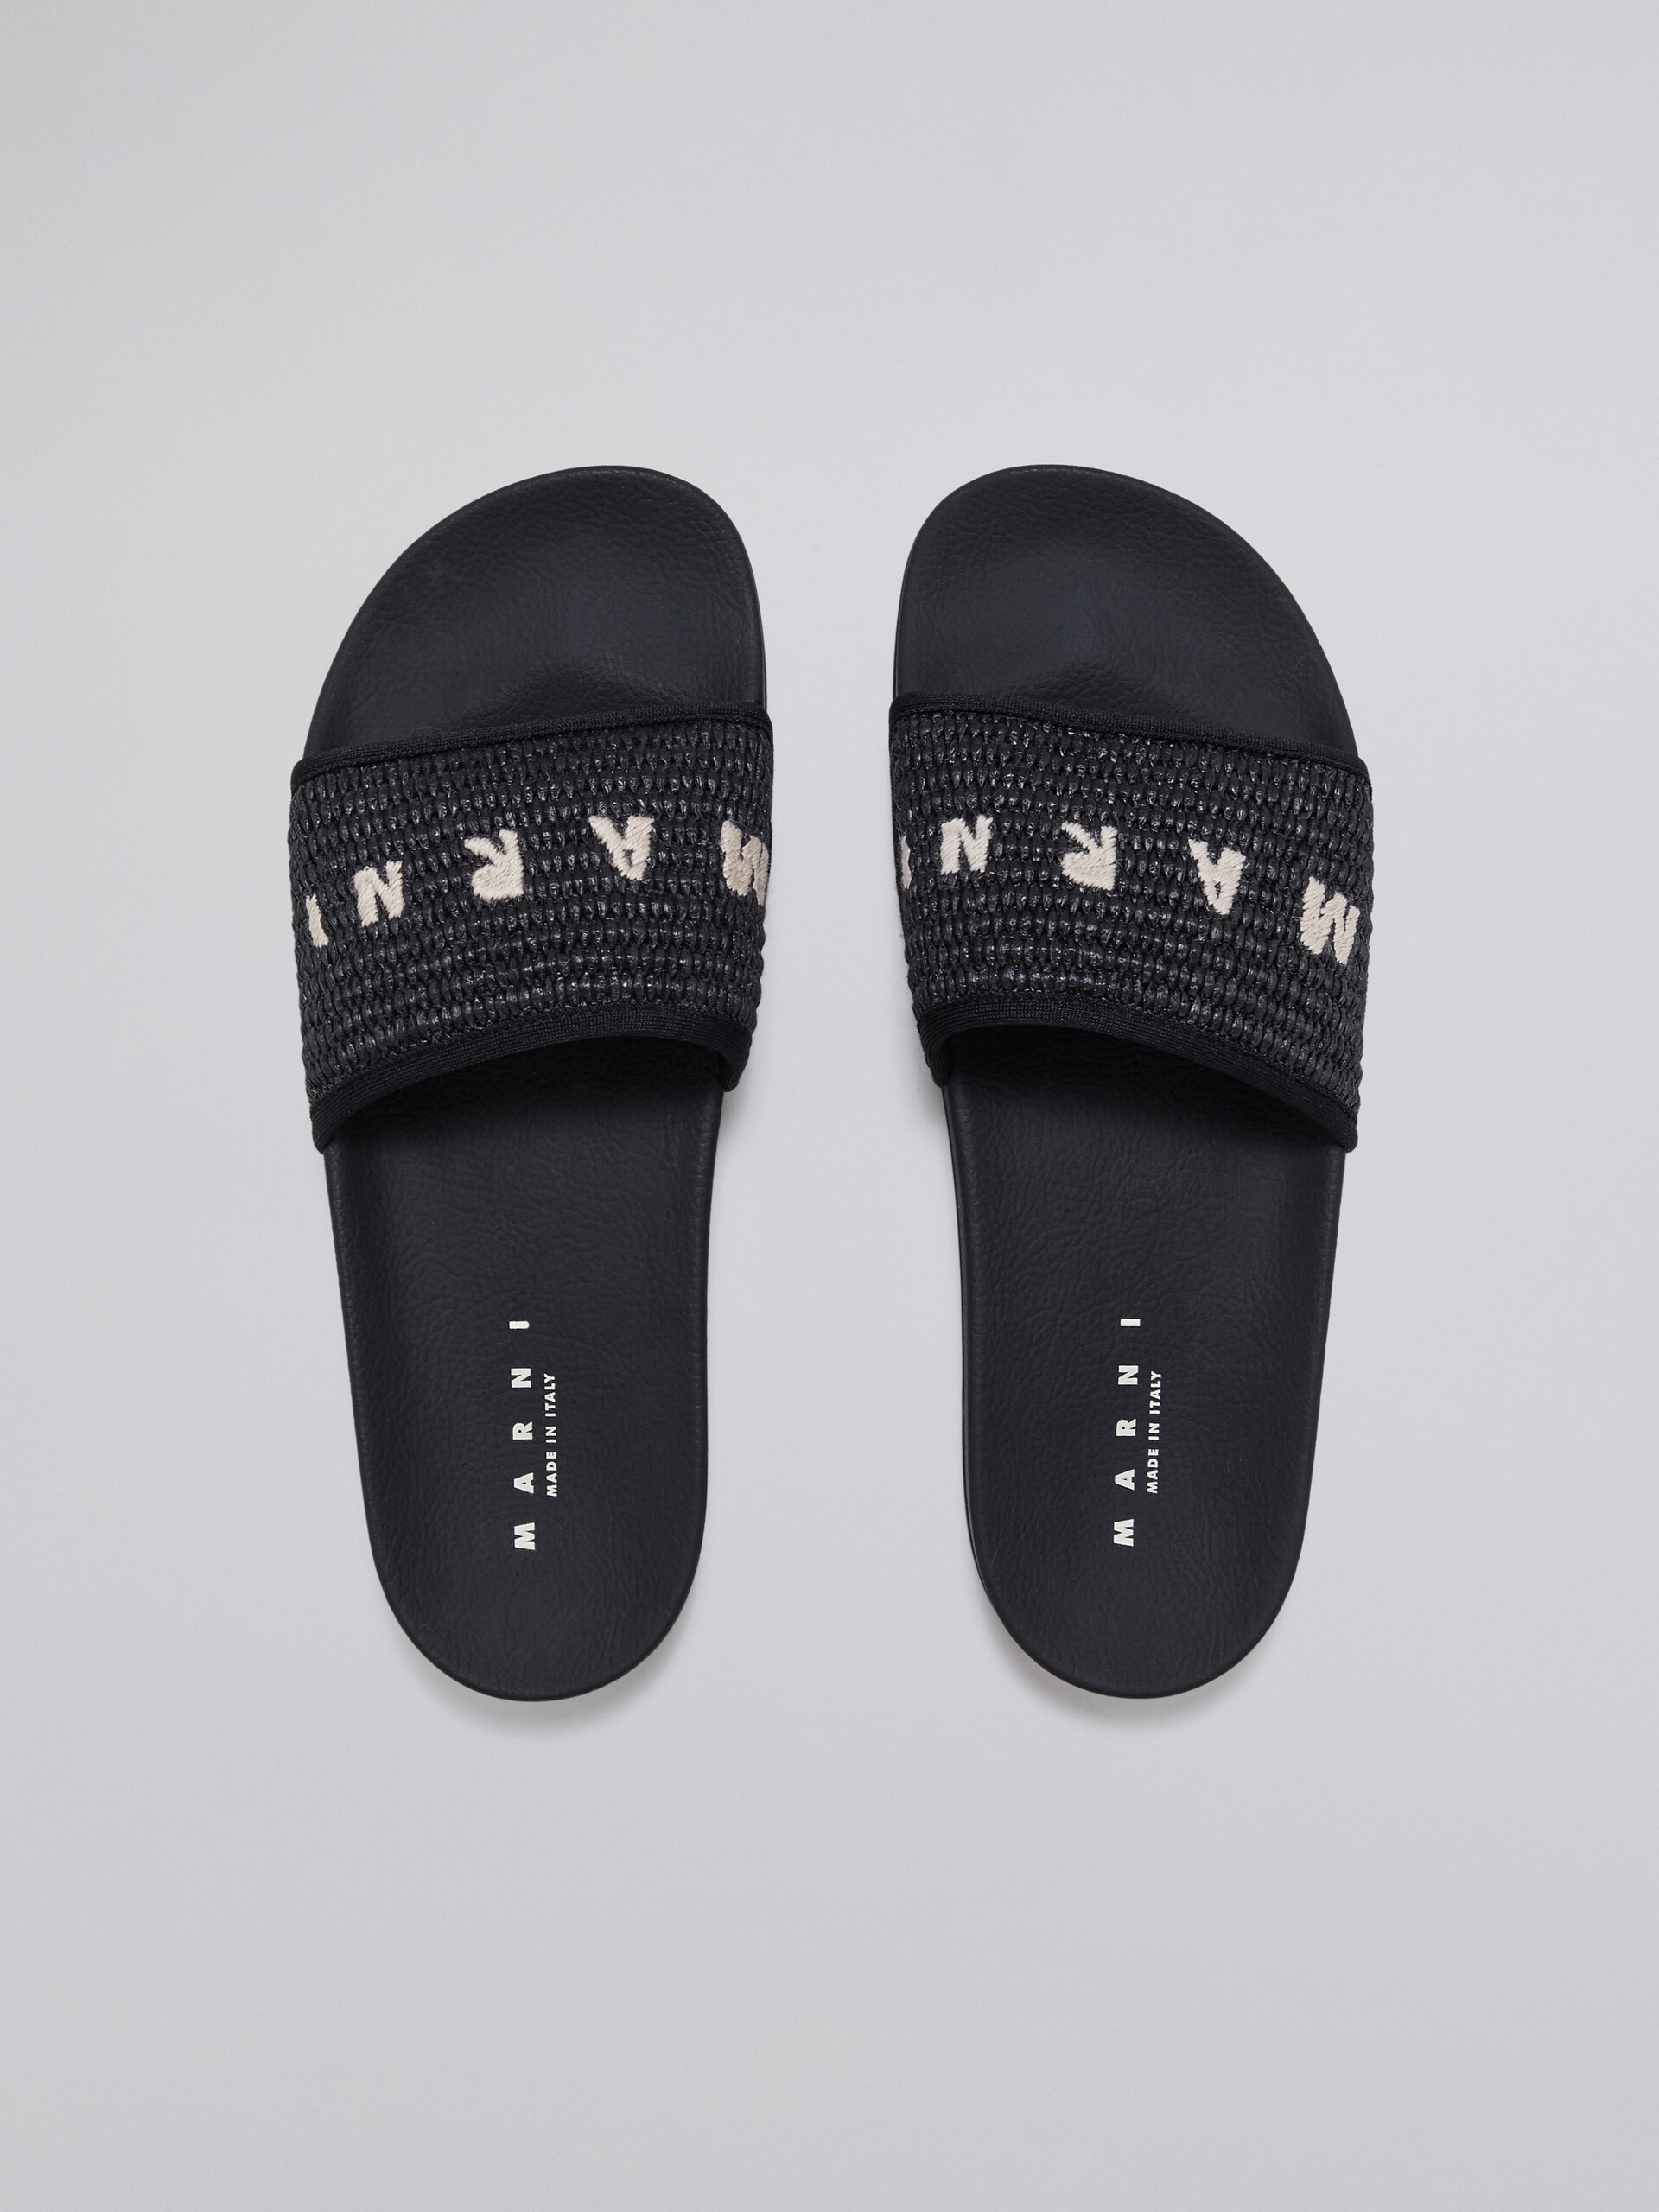 블랙 라피아 샌들 - Sandals - Image 4